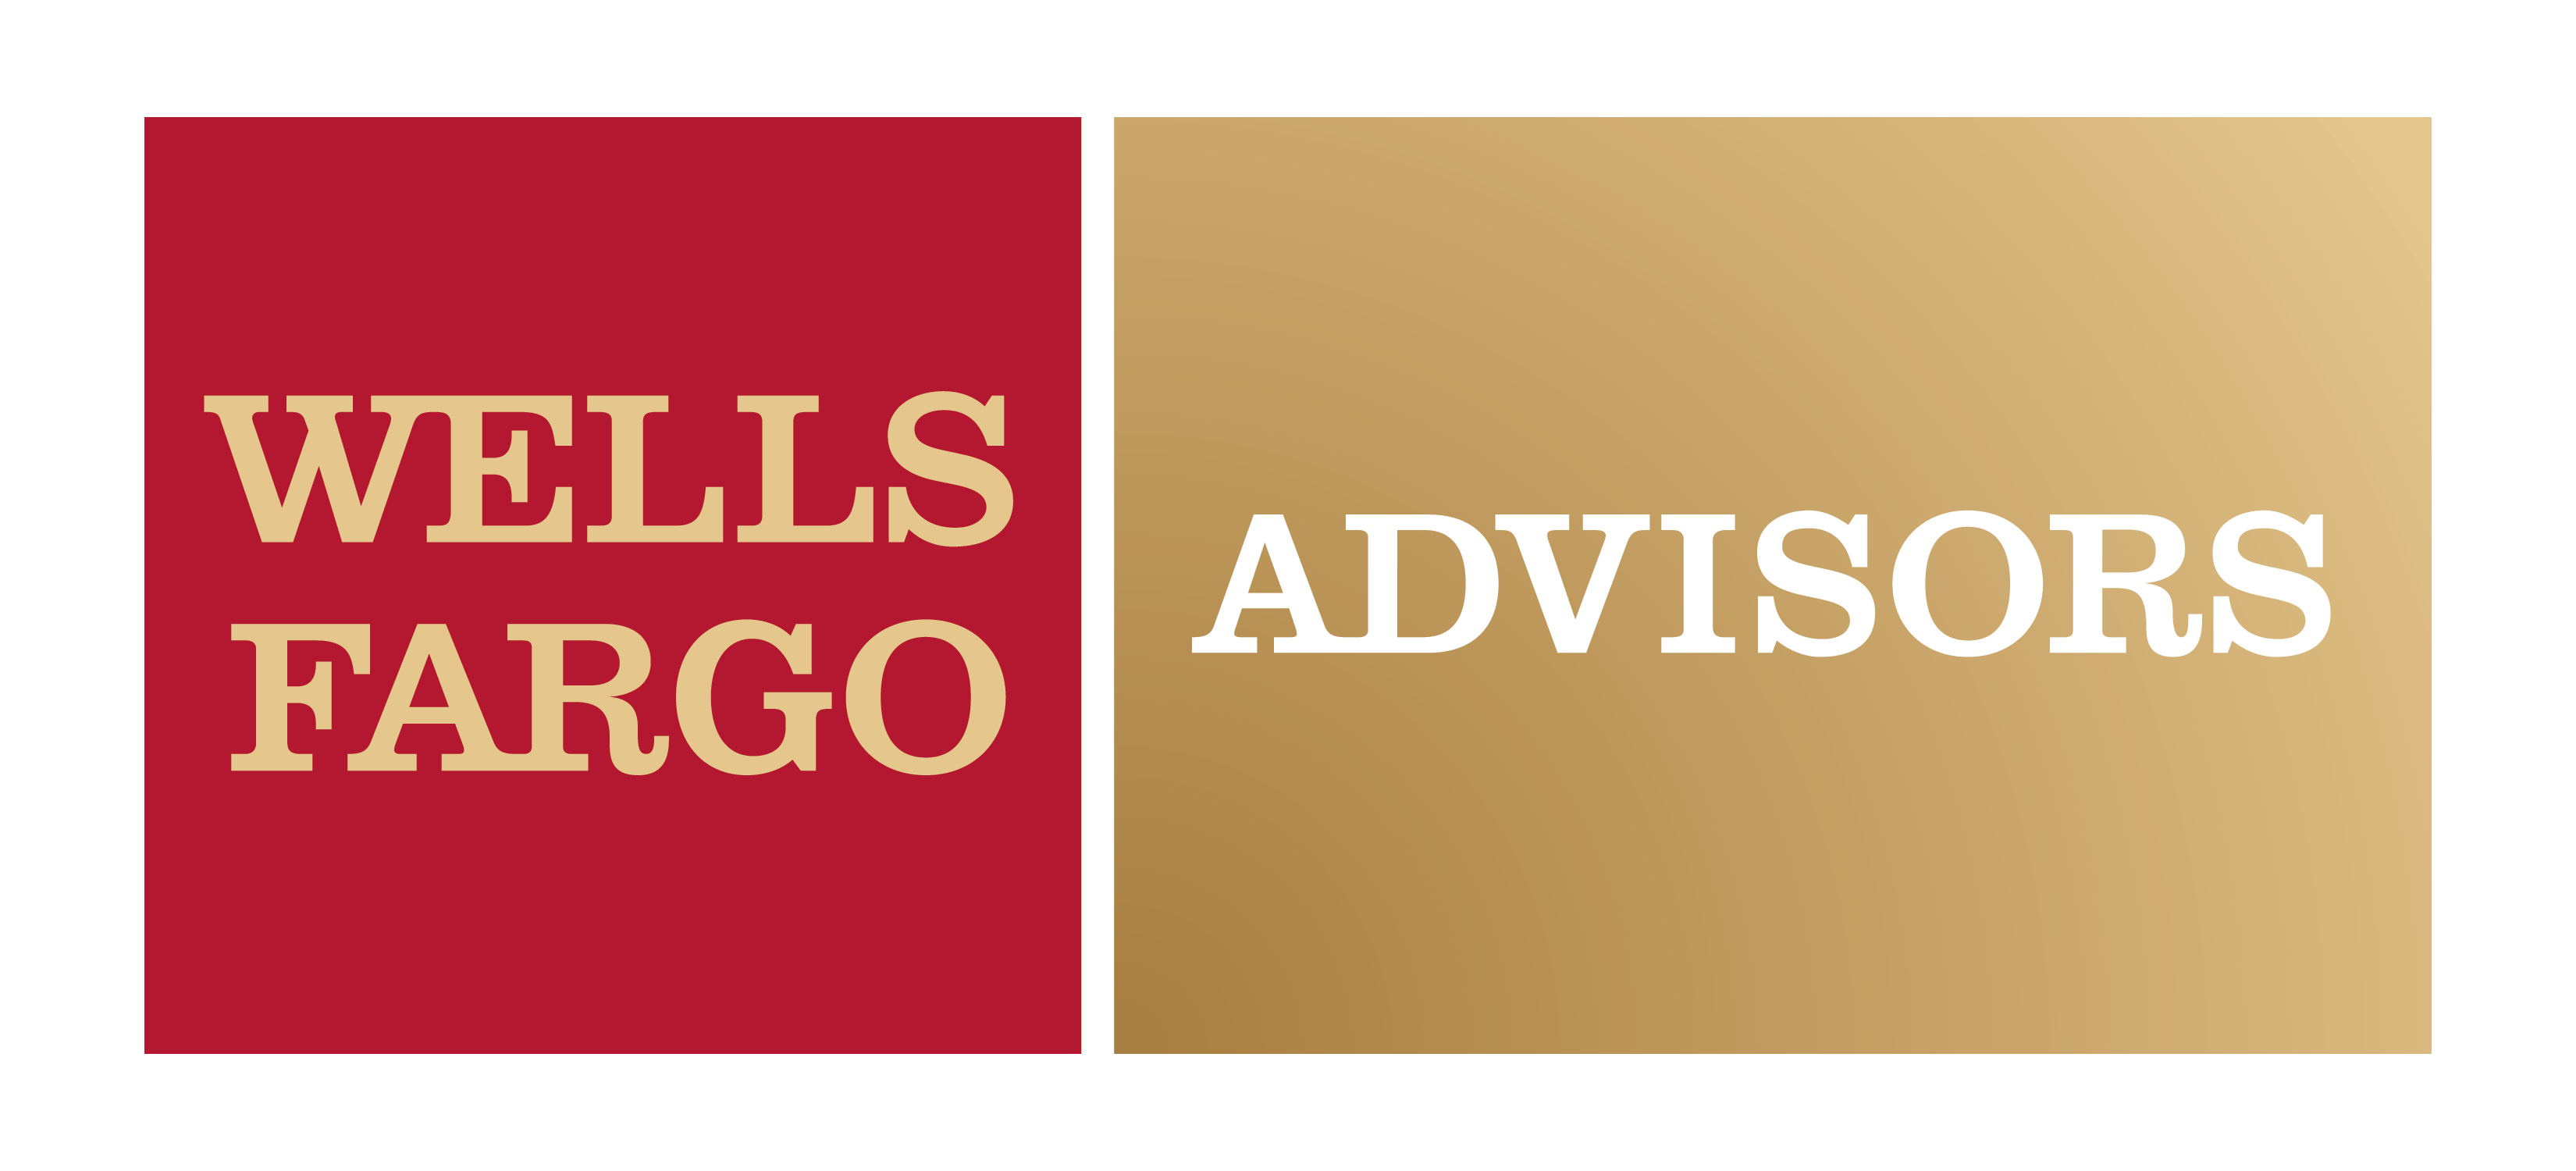 Wells Fargo Advisors Logo PNG Image